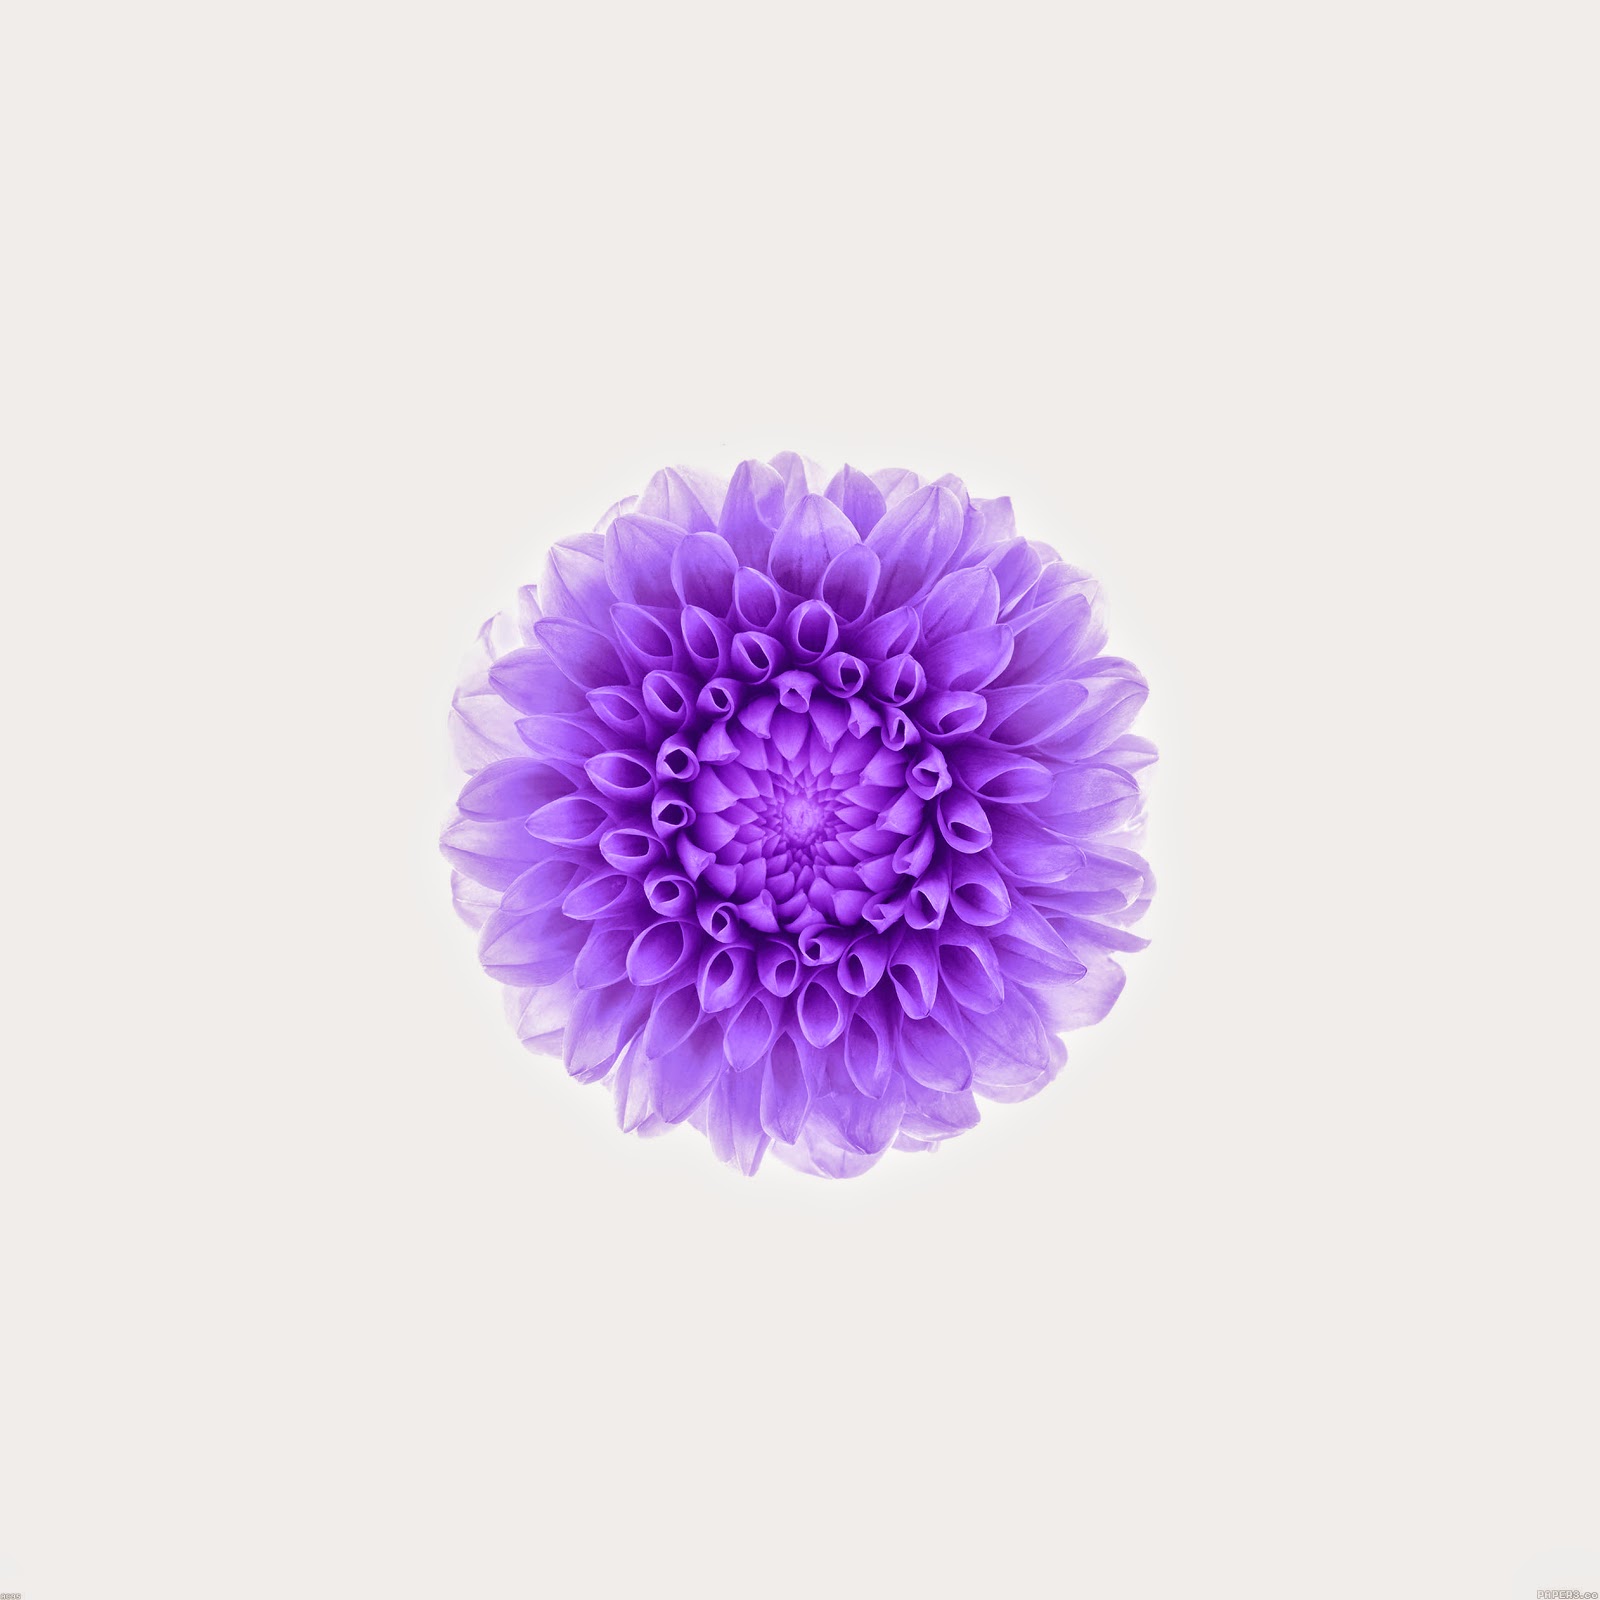   ac95 wallpaper apple iphone6 plus ios8 flower purple 9 wallpaperjpg